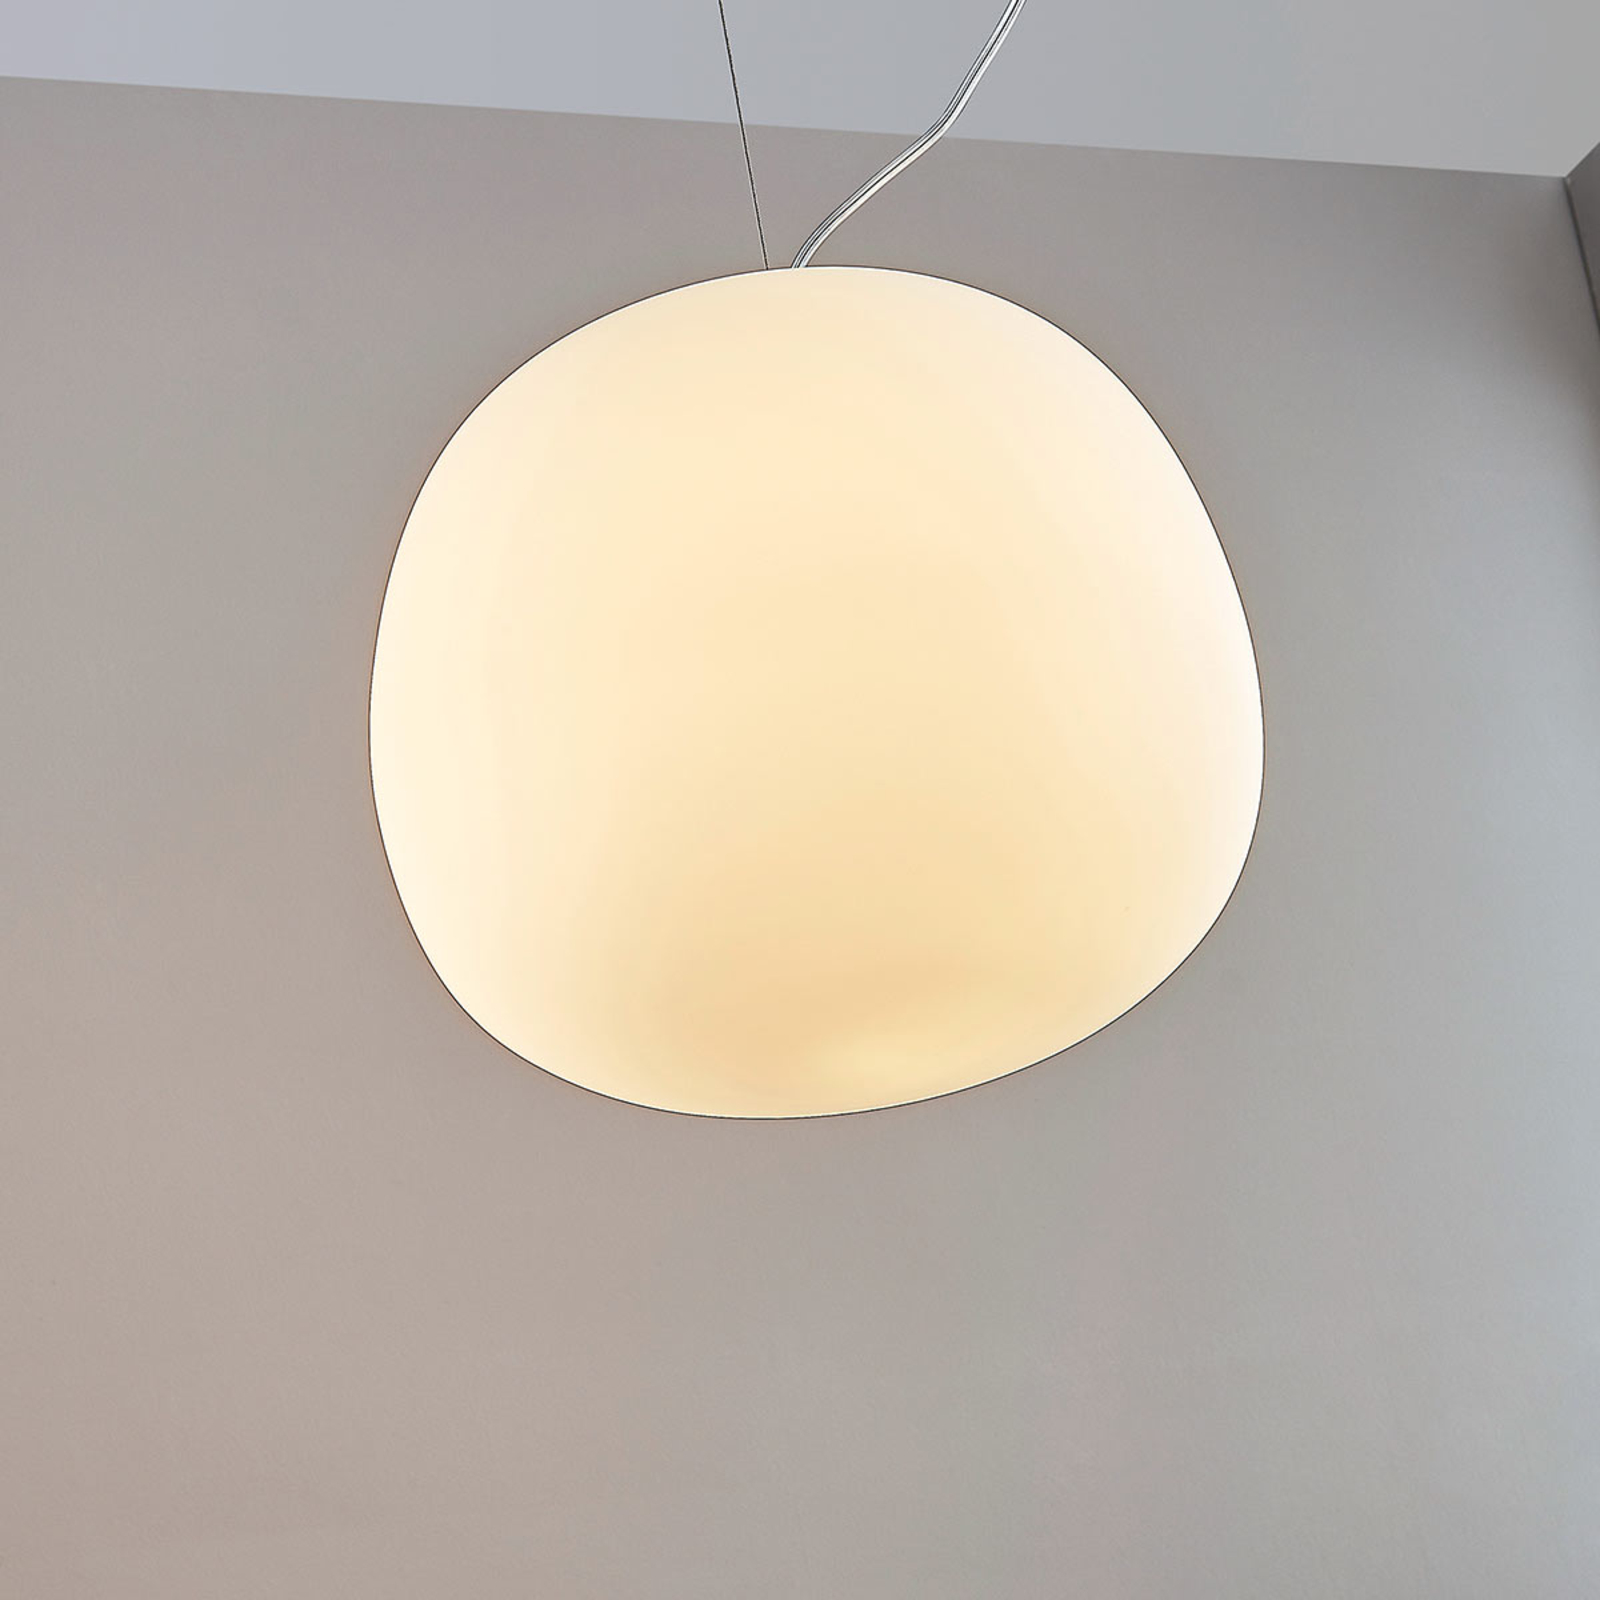 Ginevra lampă sticlă, rotundă, alb, 38 cm